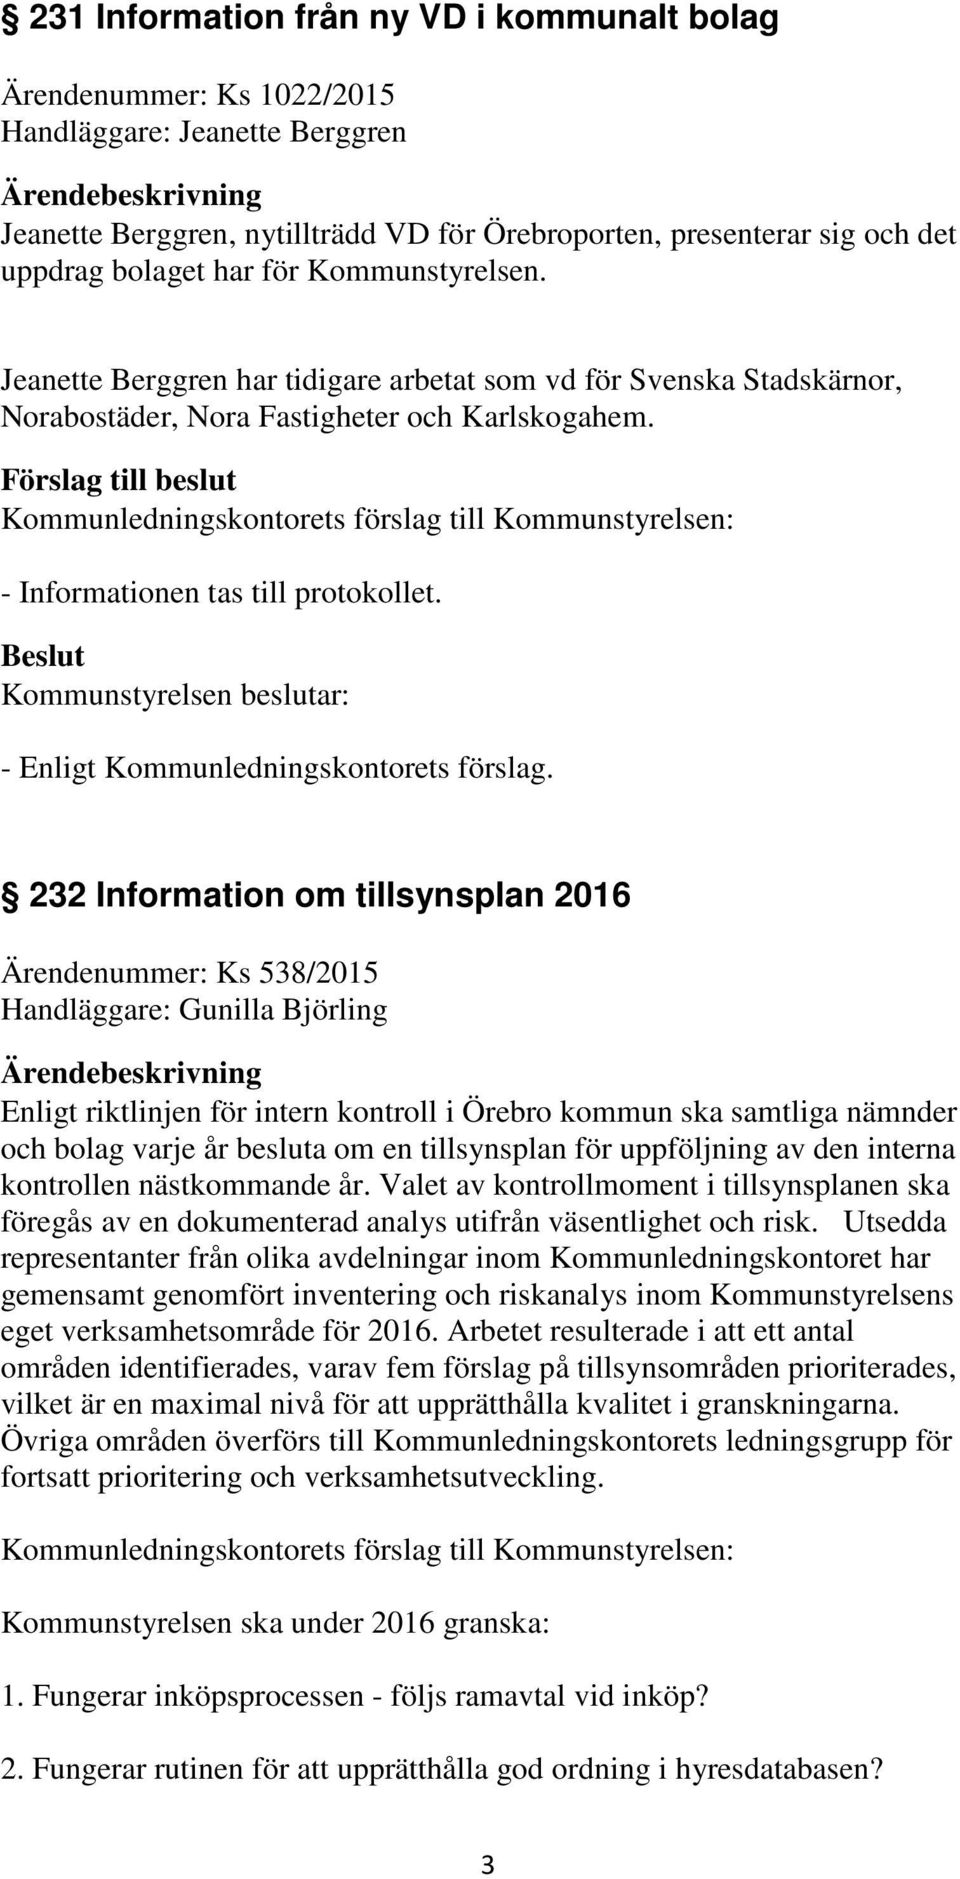 232 Information om tillsynsplan 2016 Ärendenummer: Ks 538/2015 Handläggare: Gunilla Björling Enligt riktlinjen för intern kontroll i Örebro kommun ska samtliga nämnder och bolag varje år besluta om